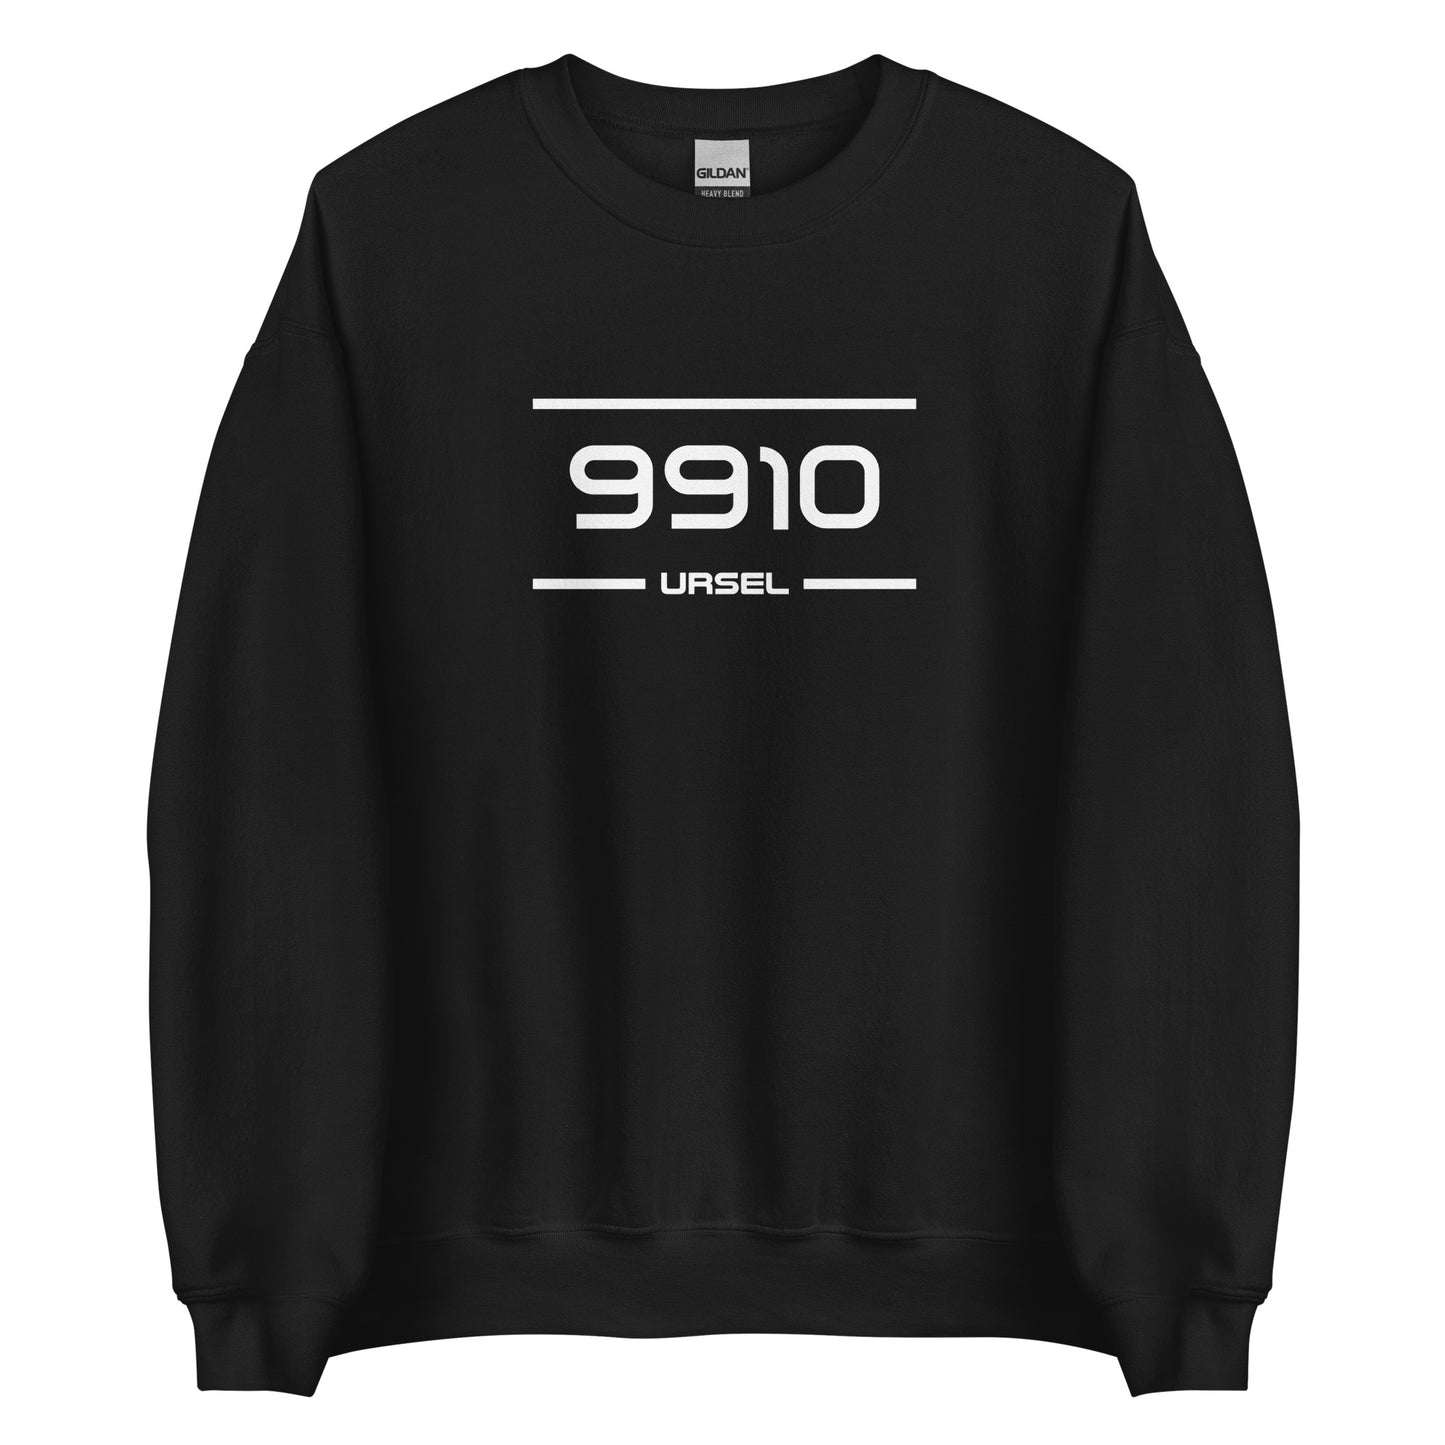 Sweater - 9910 - Ursel (M/V)